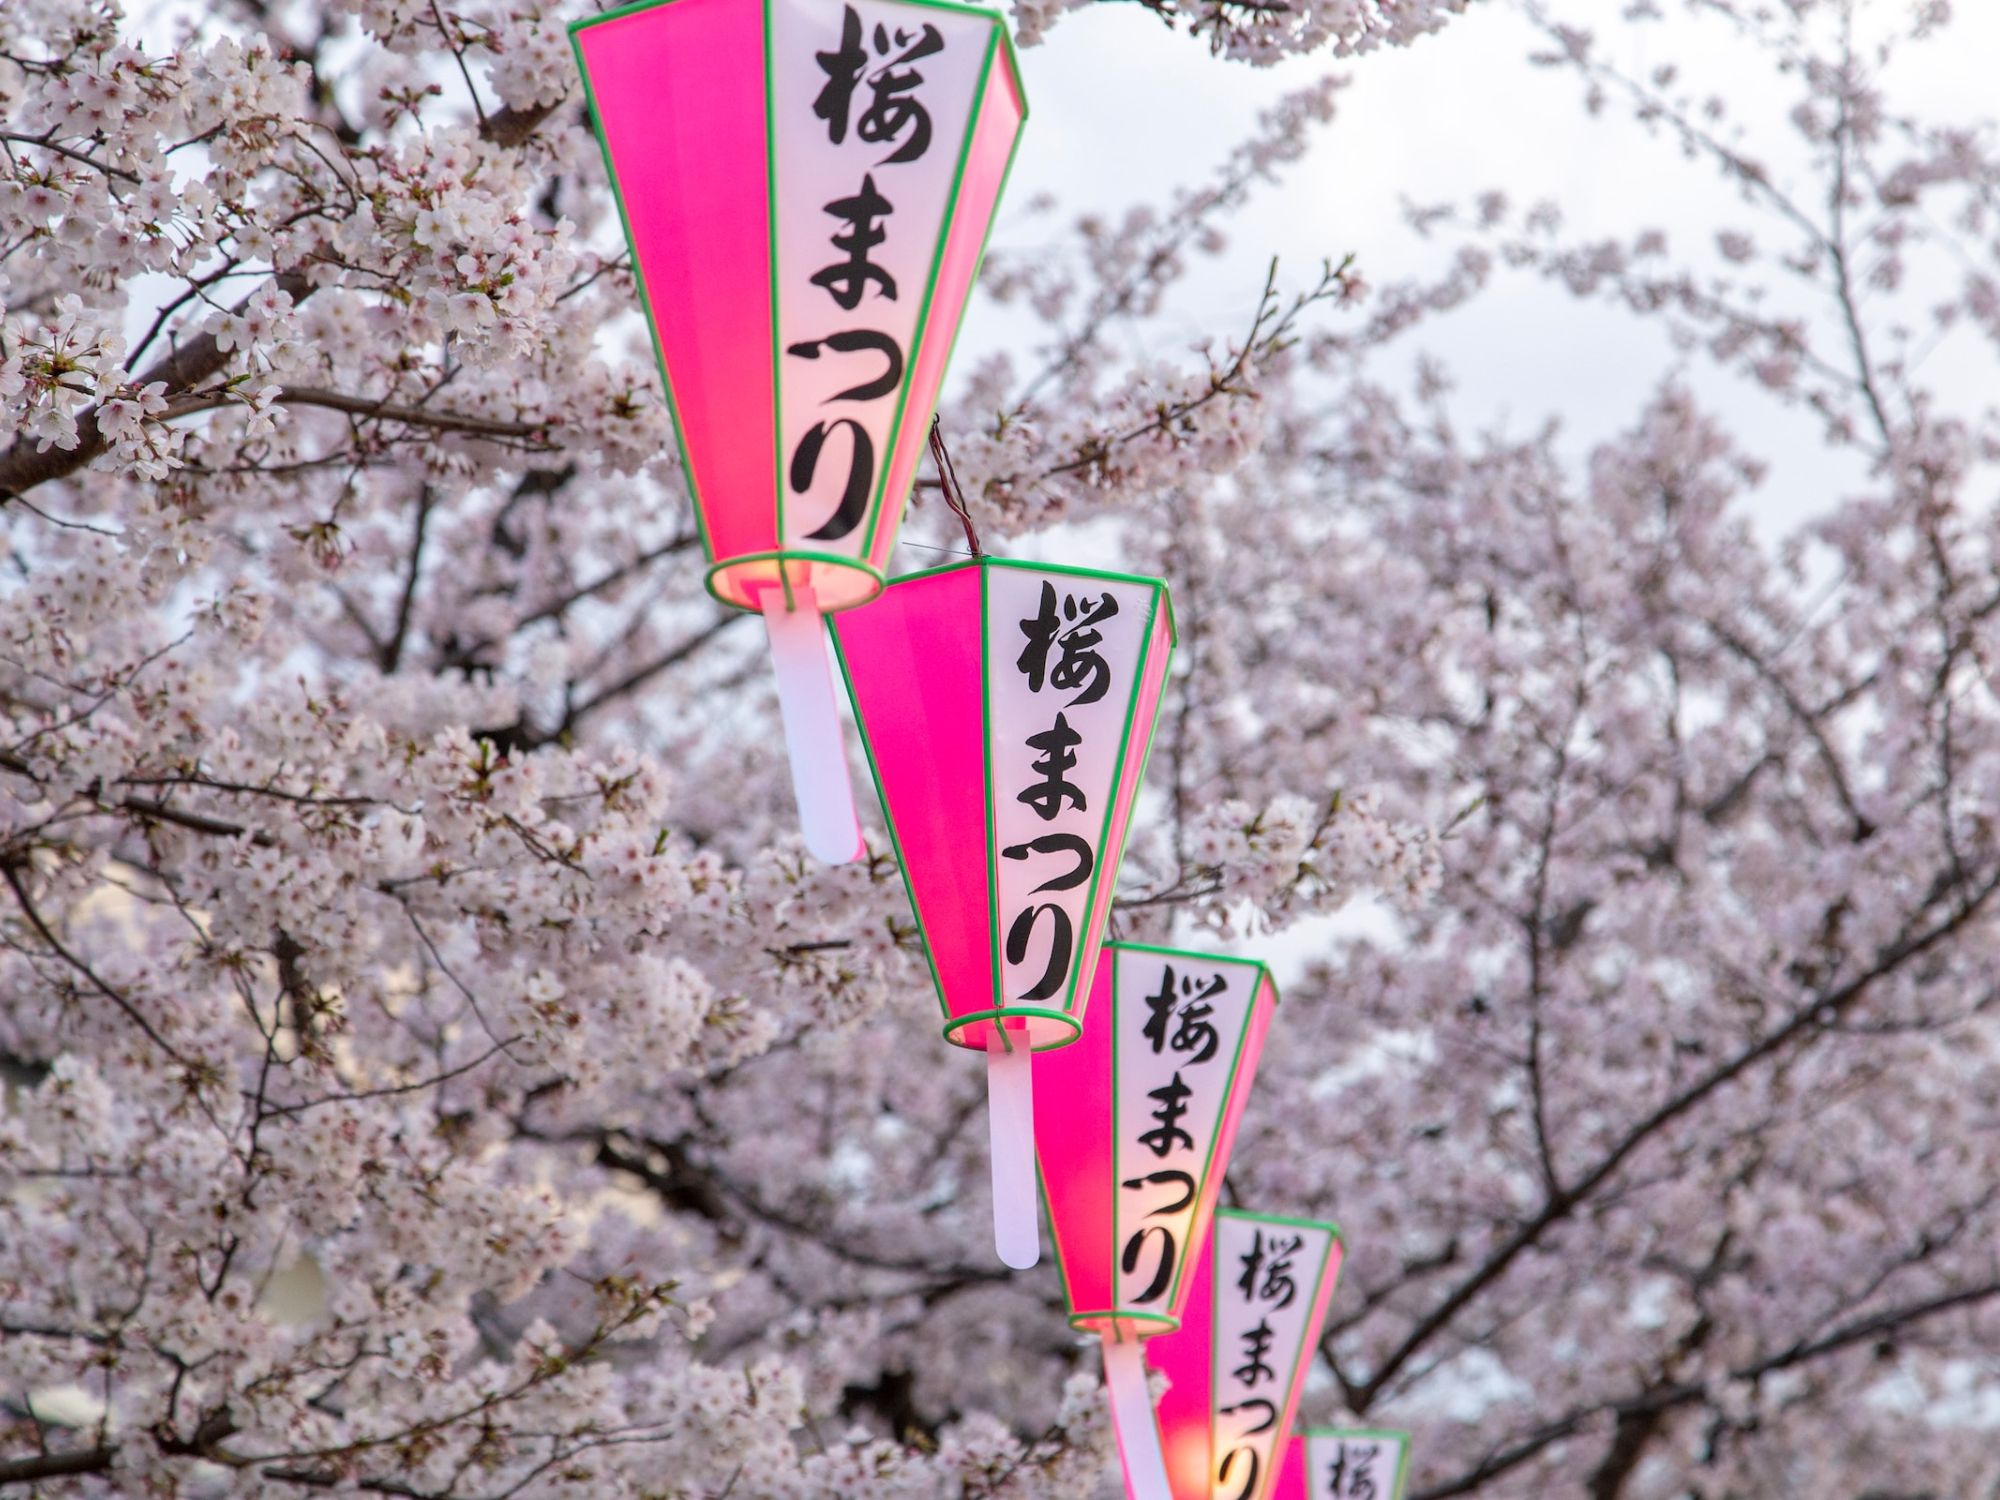 Cherry Blossom Festival in Japan